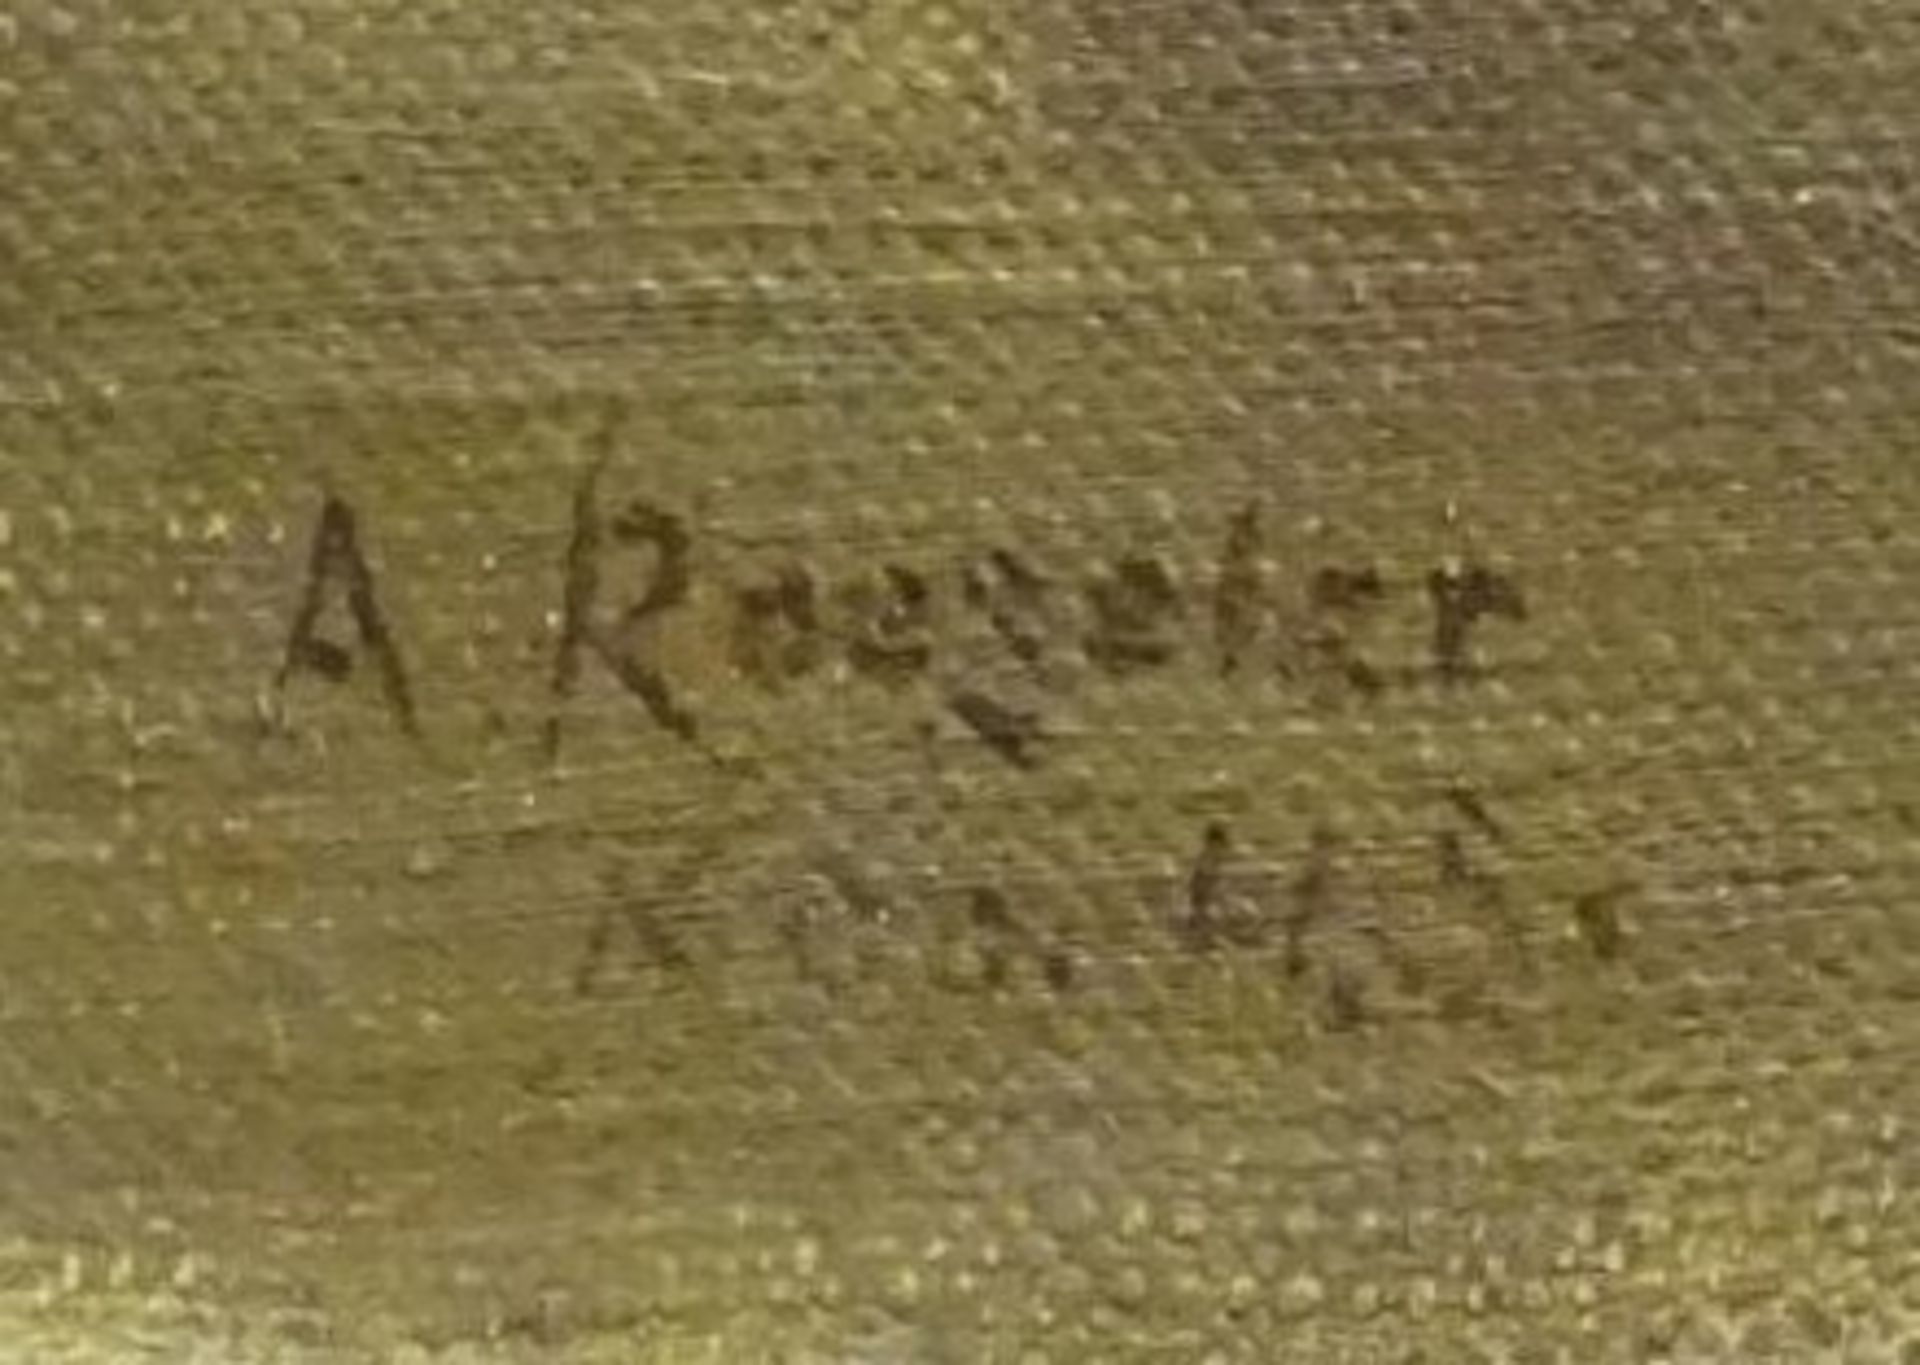 August ROESELER (1866-1934) Stilleben mit Dackel, Öl/Leinen, 27,5x24 c - Bild 3 aus 3